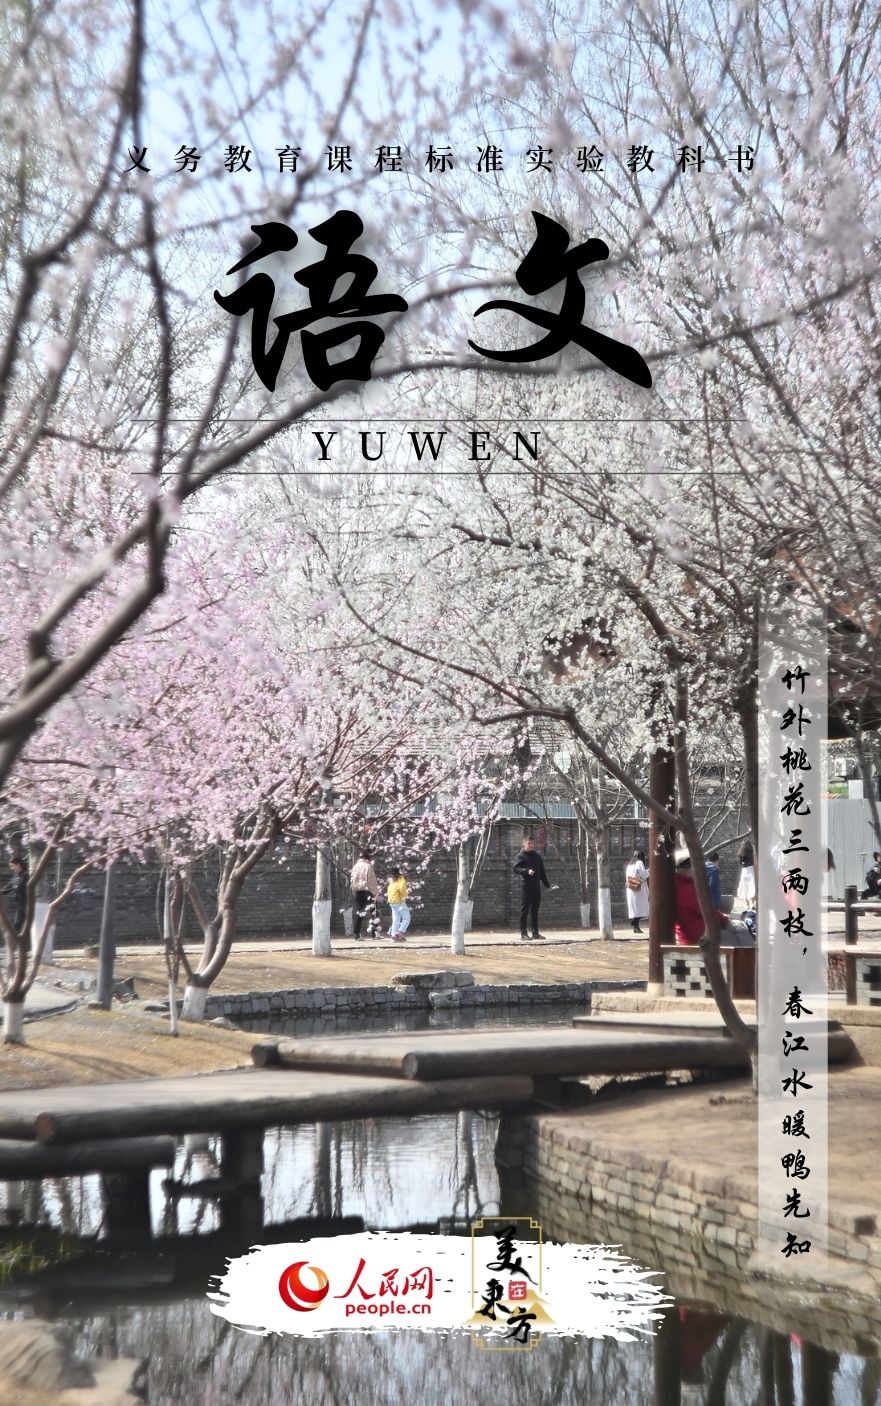 北京三里河公园内春桃竞相开放。